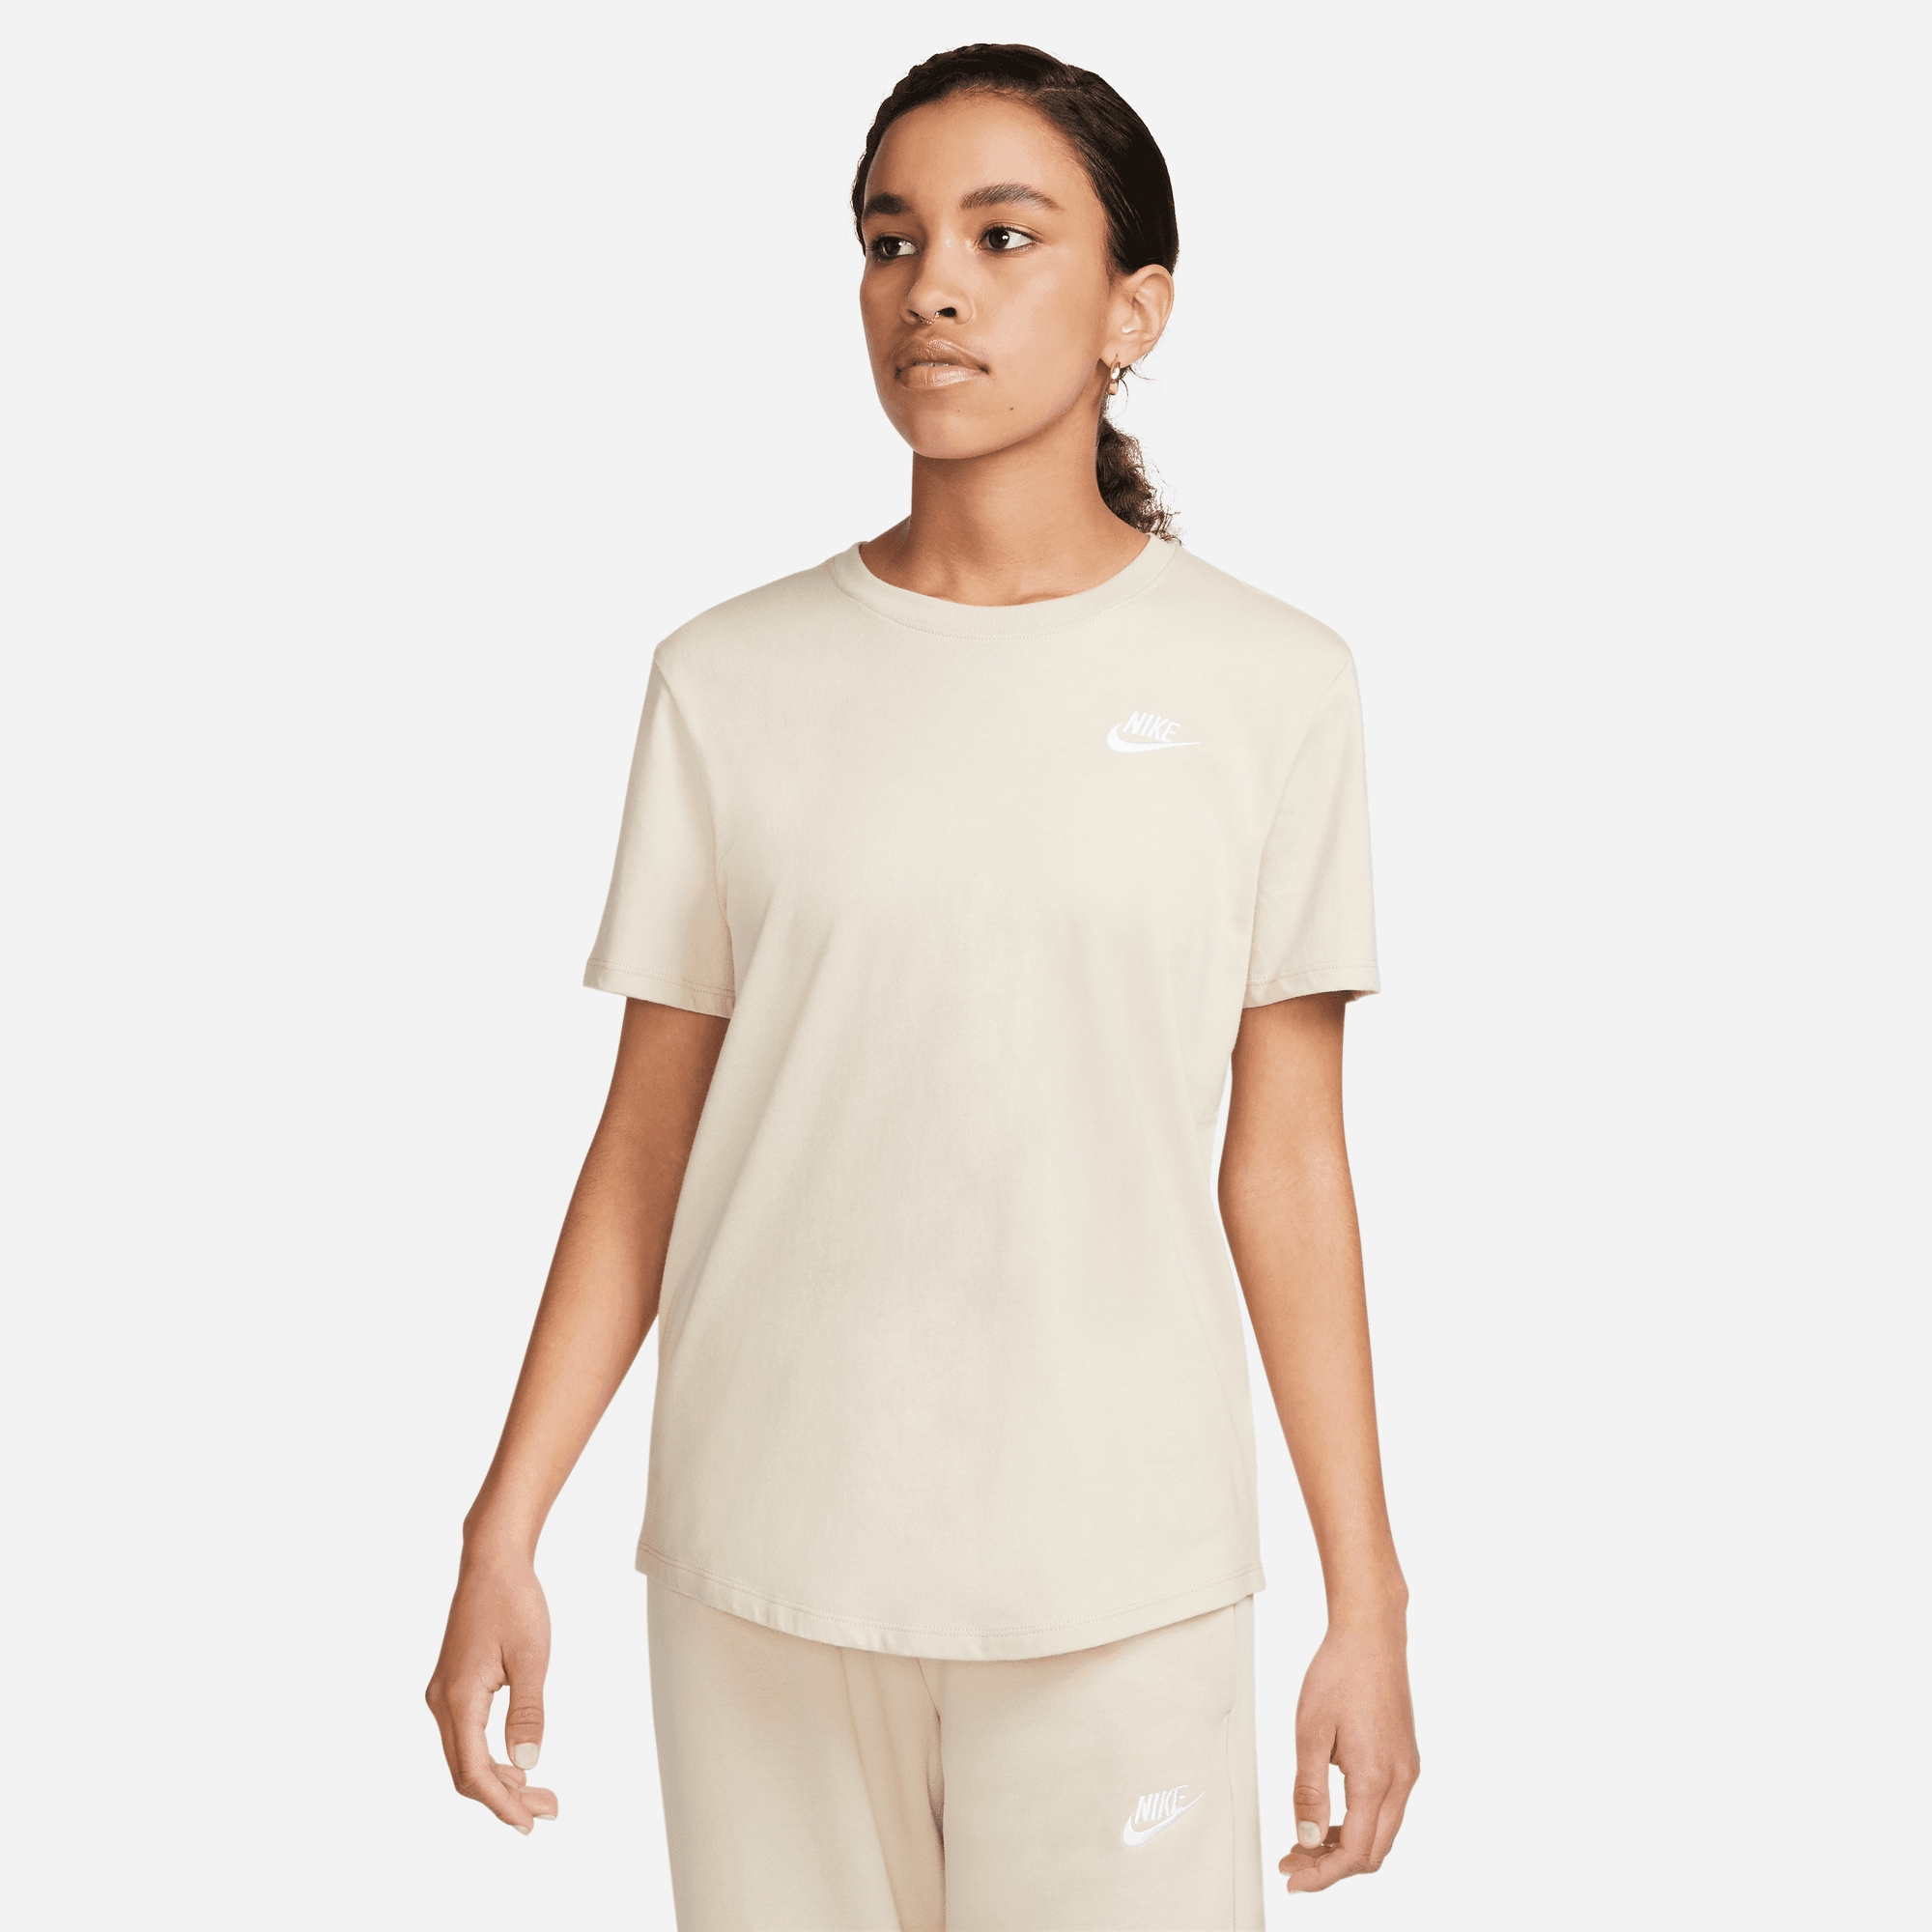 ESSENTIALS »CLUB T-Shirt Nike WOMEN\'S Shop Online Sportswear OTTO T-SHIRT« im bestellen